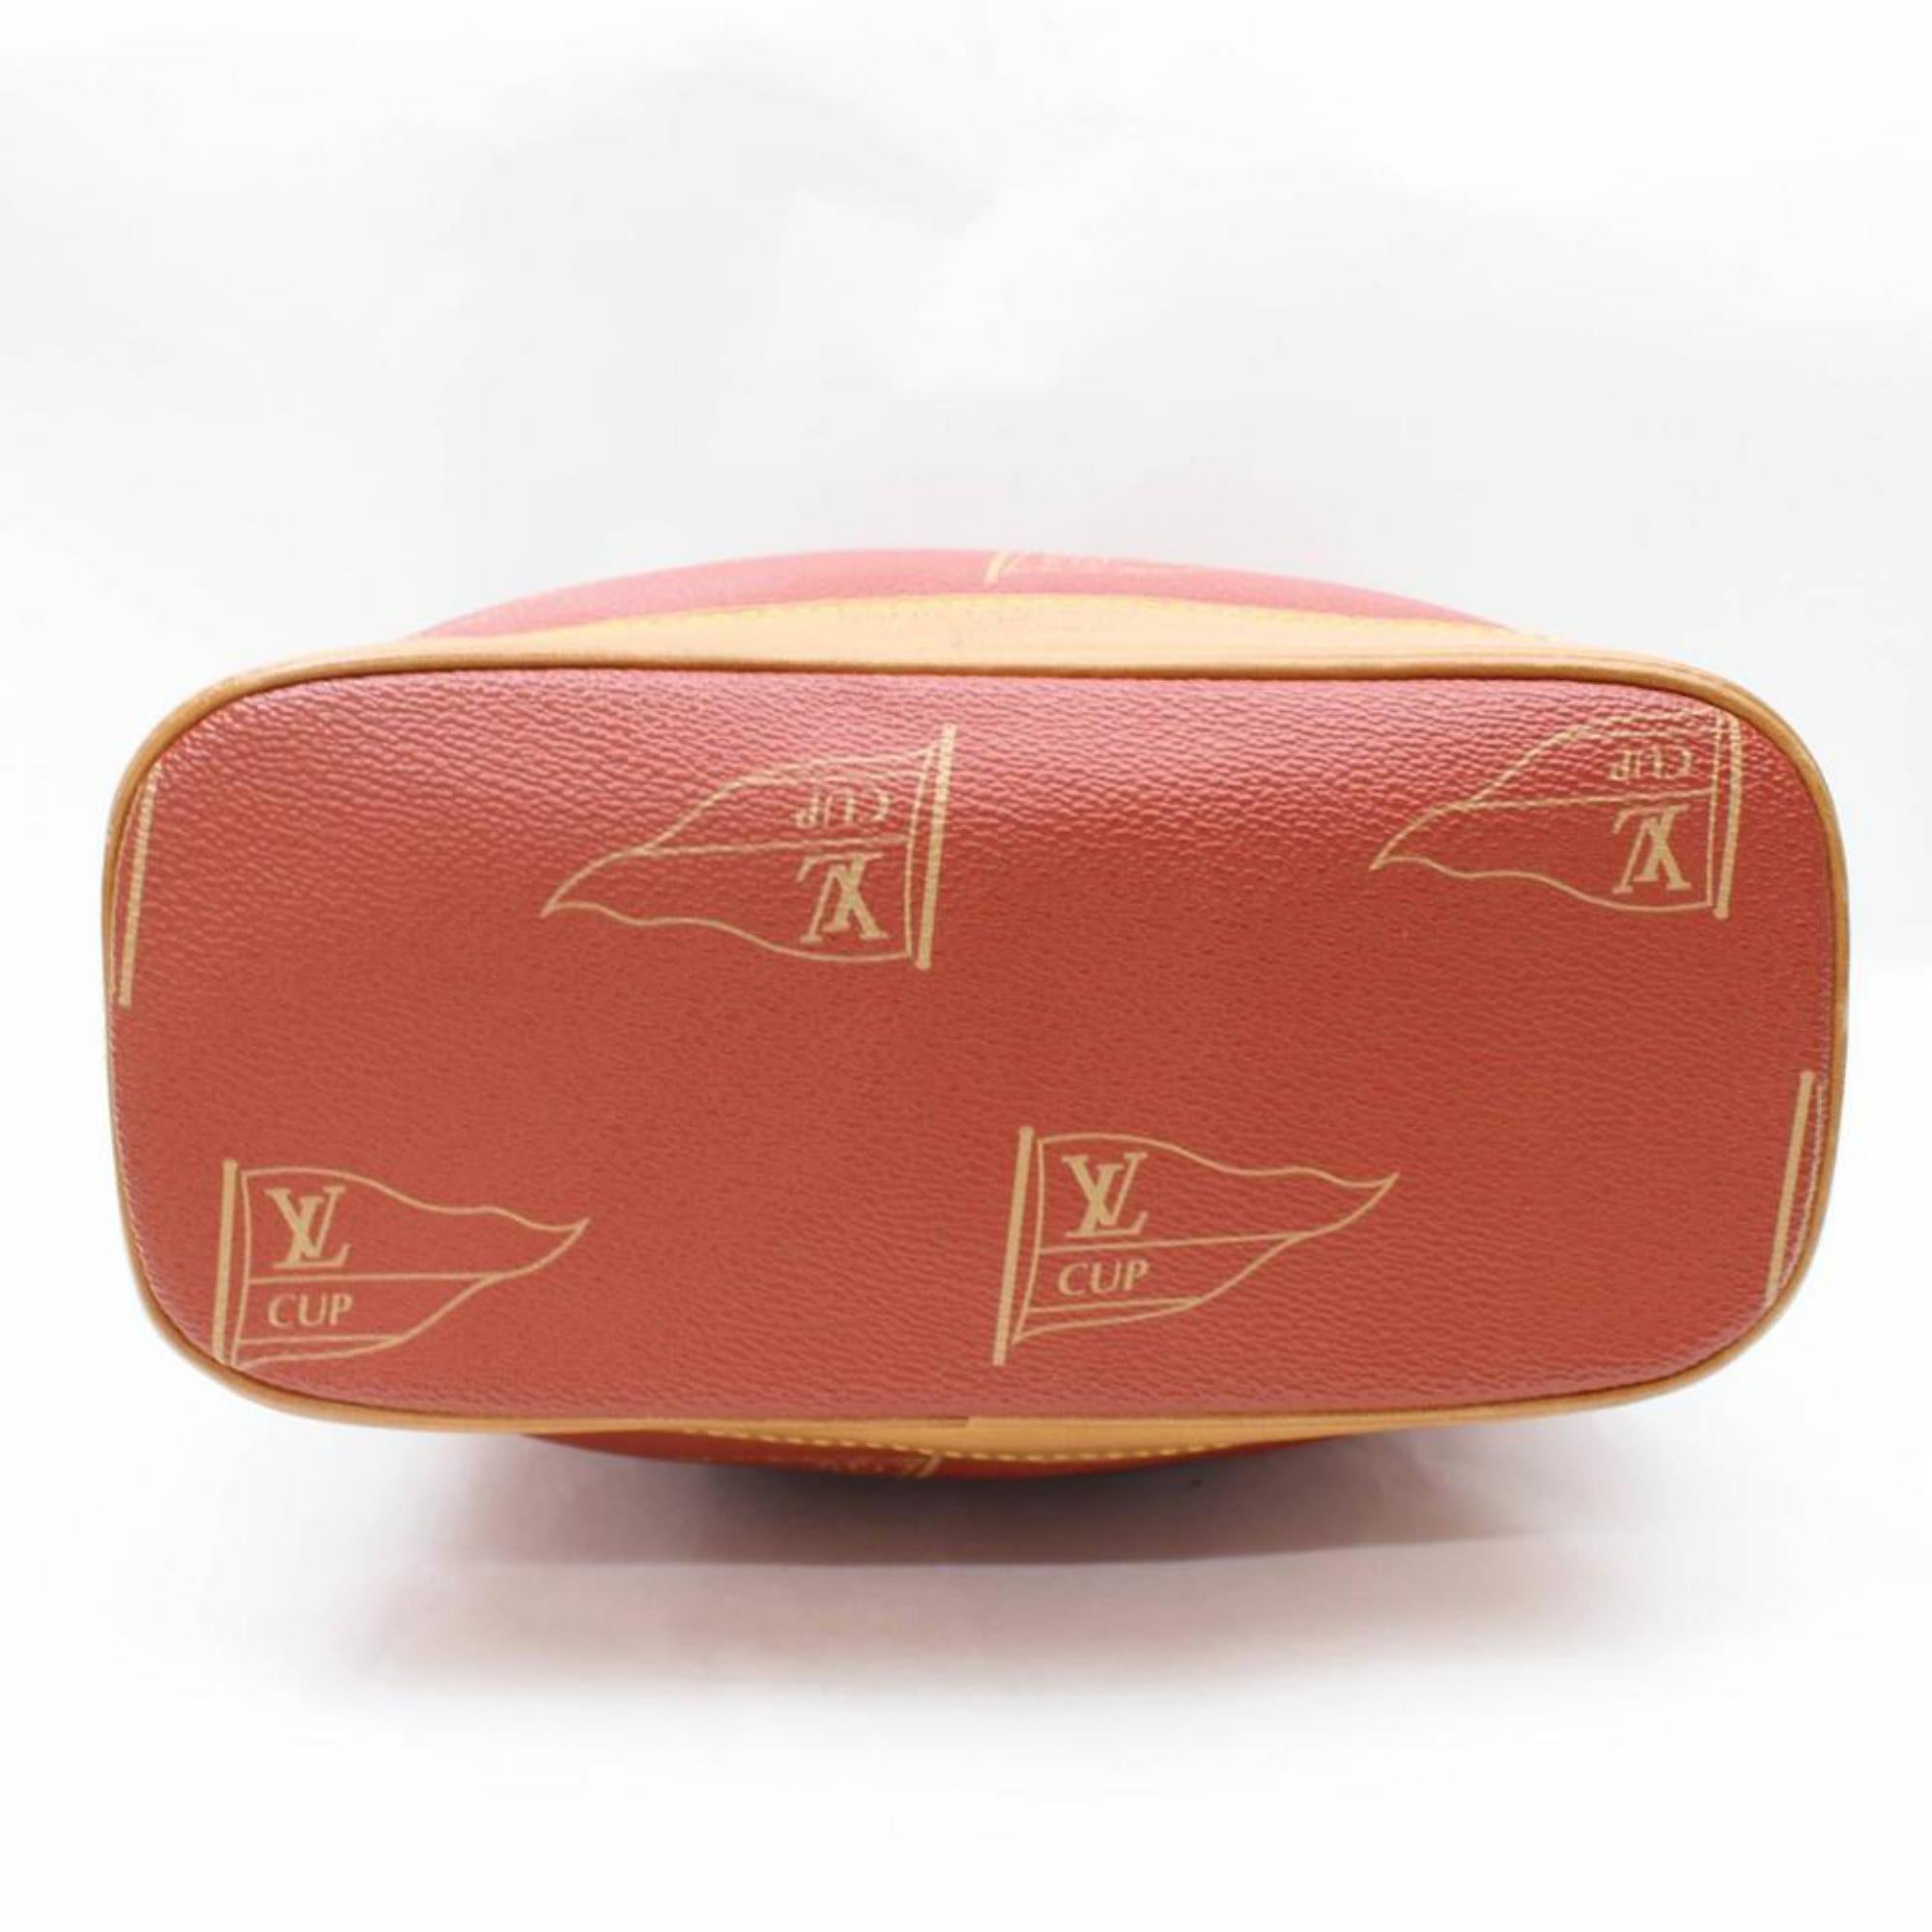 Louis Vuitton Lv Cup Touquet Hobo 867276 Red Monogram Canvas Shoulder Bag For Sale 4